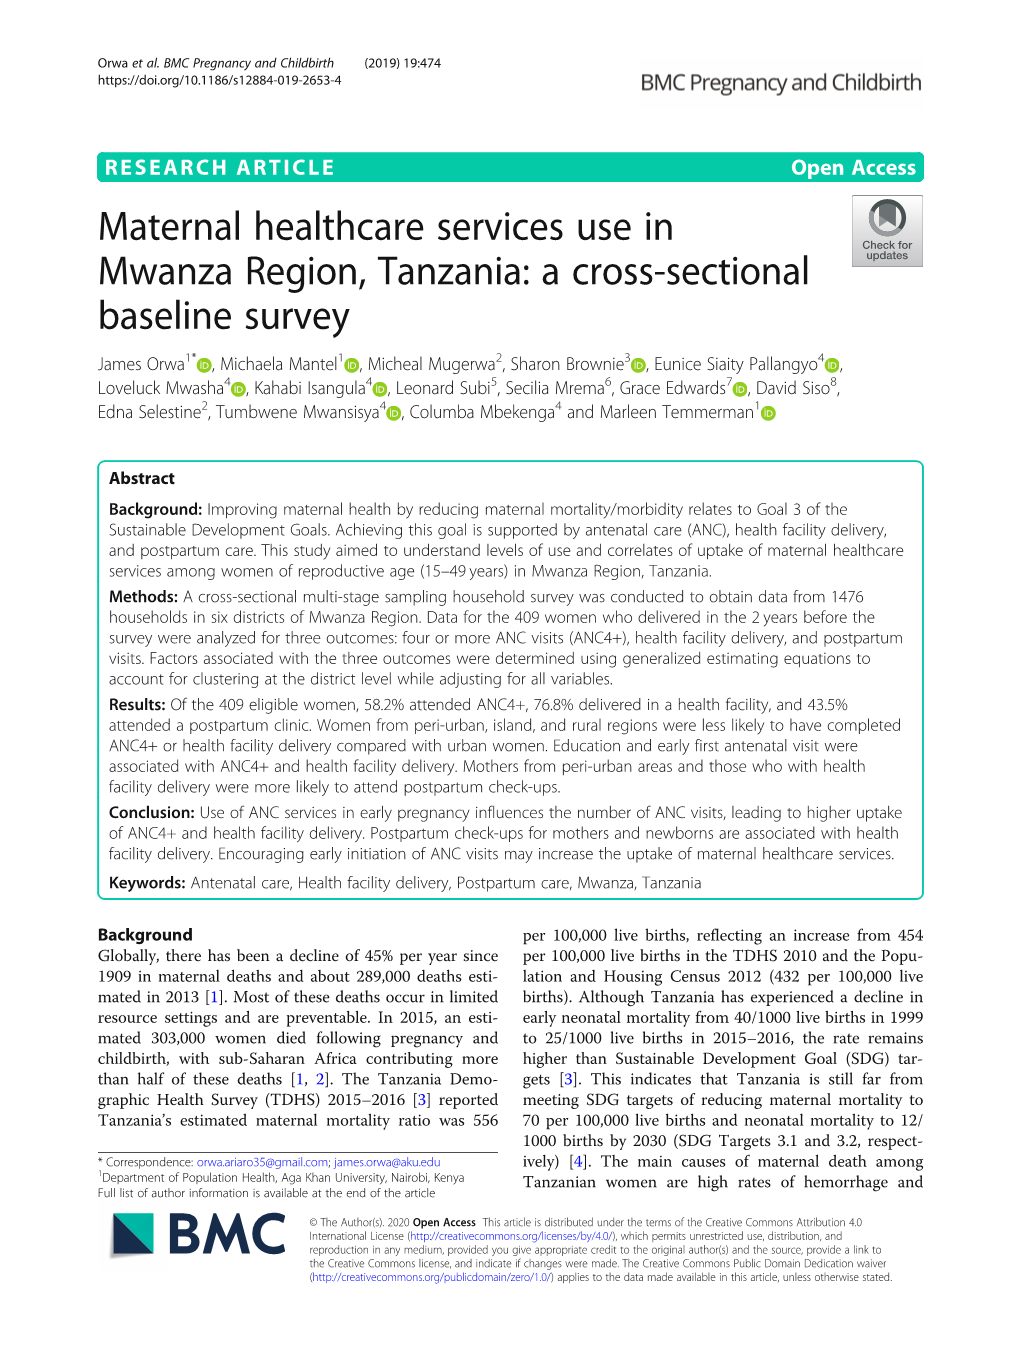 Maternal Healthcare Services Use in Mwanza Region, Tanzania